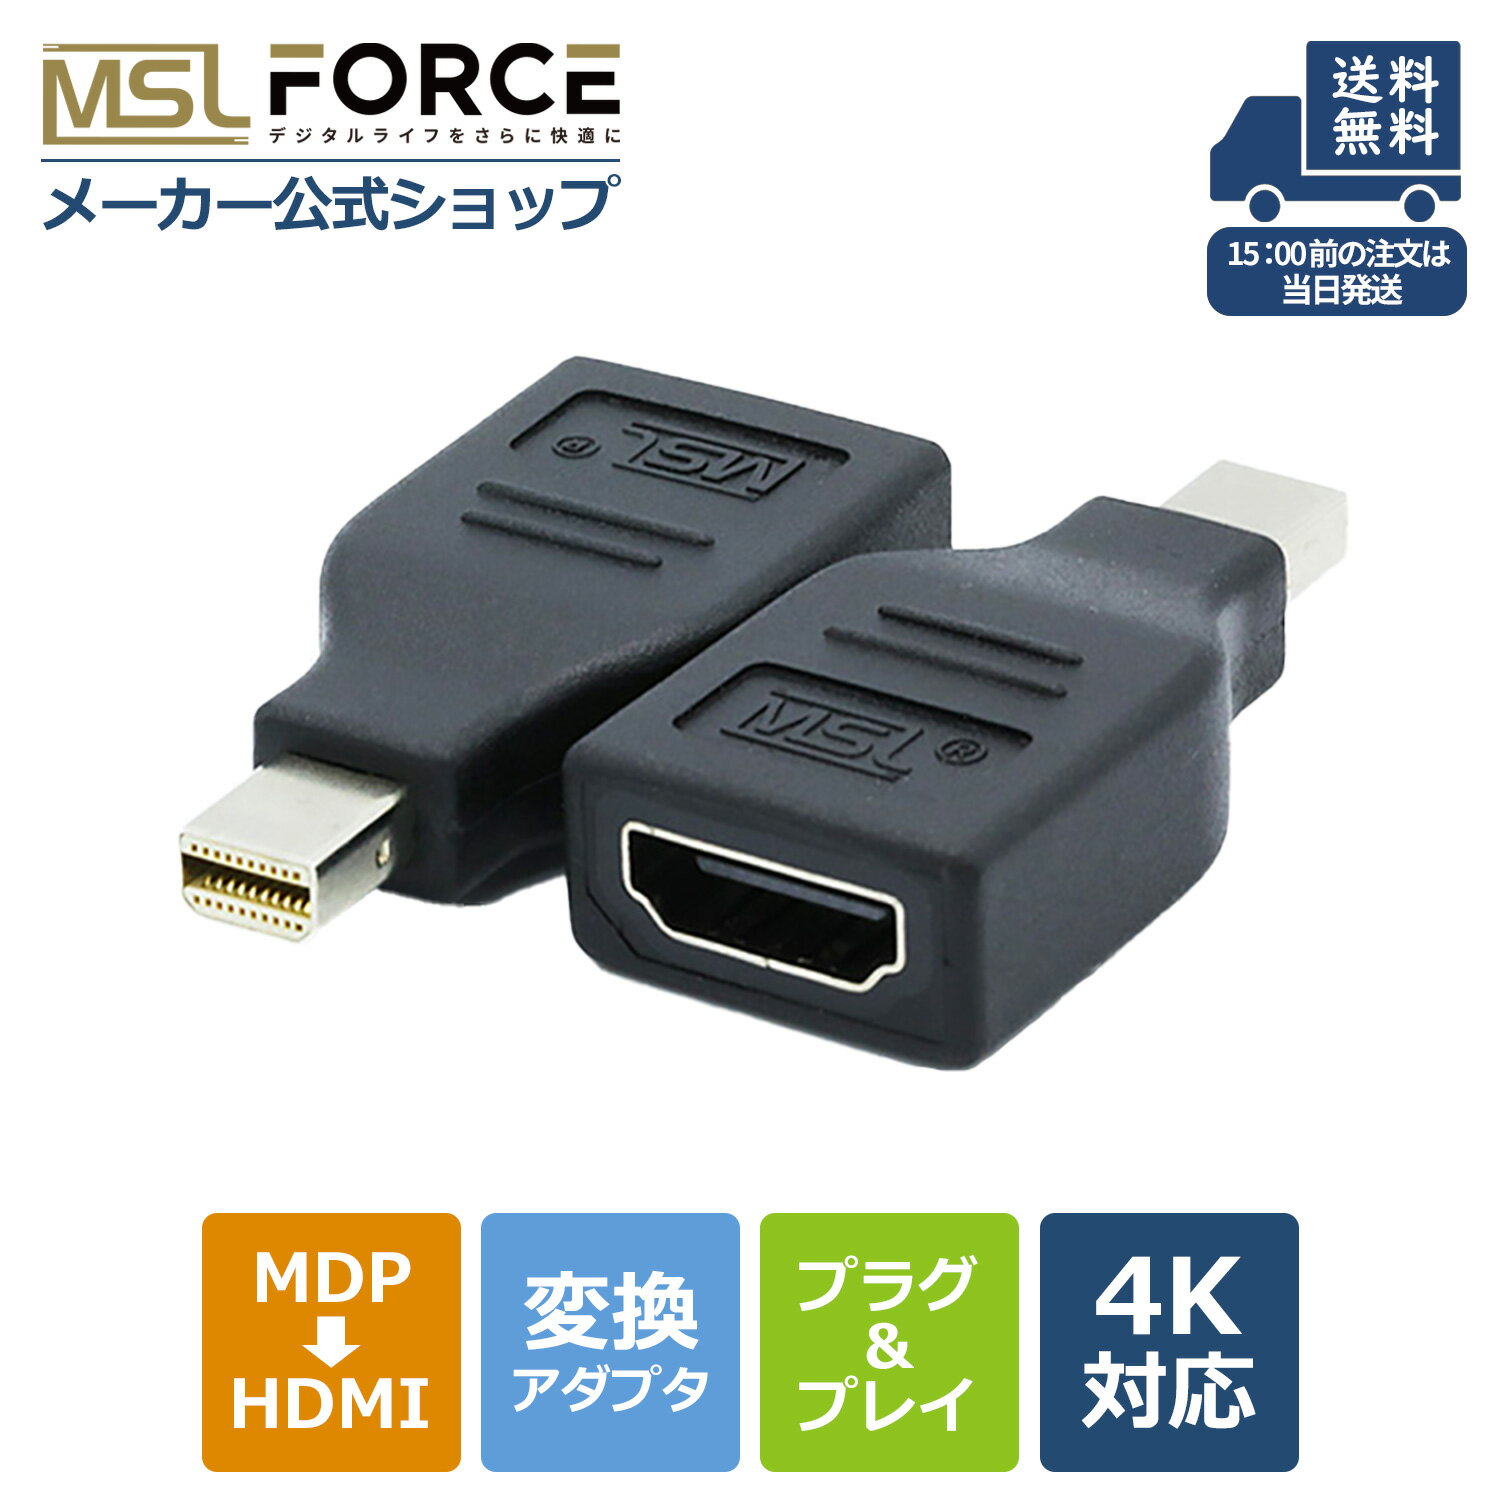 【スーパーSALE限定15%OFFクーポン】 Mini DisplayPort （オス） to HDMI （メス) 変換アダプタ mdp ミニ display port 4k 耐久性 変換 プラグ ディスプレイポート 変換アダプター ミニディスプレイポート uc03 変換プラグ mdp → hdmi変換アダプター 高解像度 送料無料